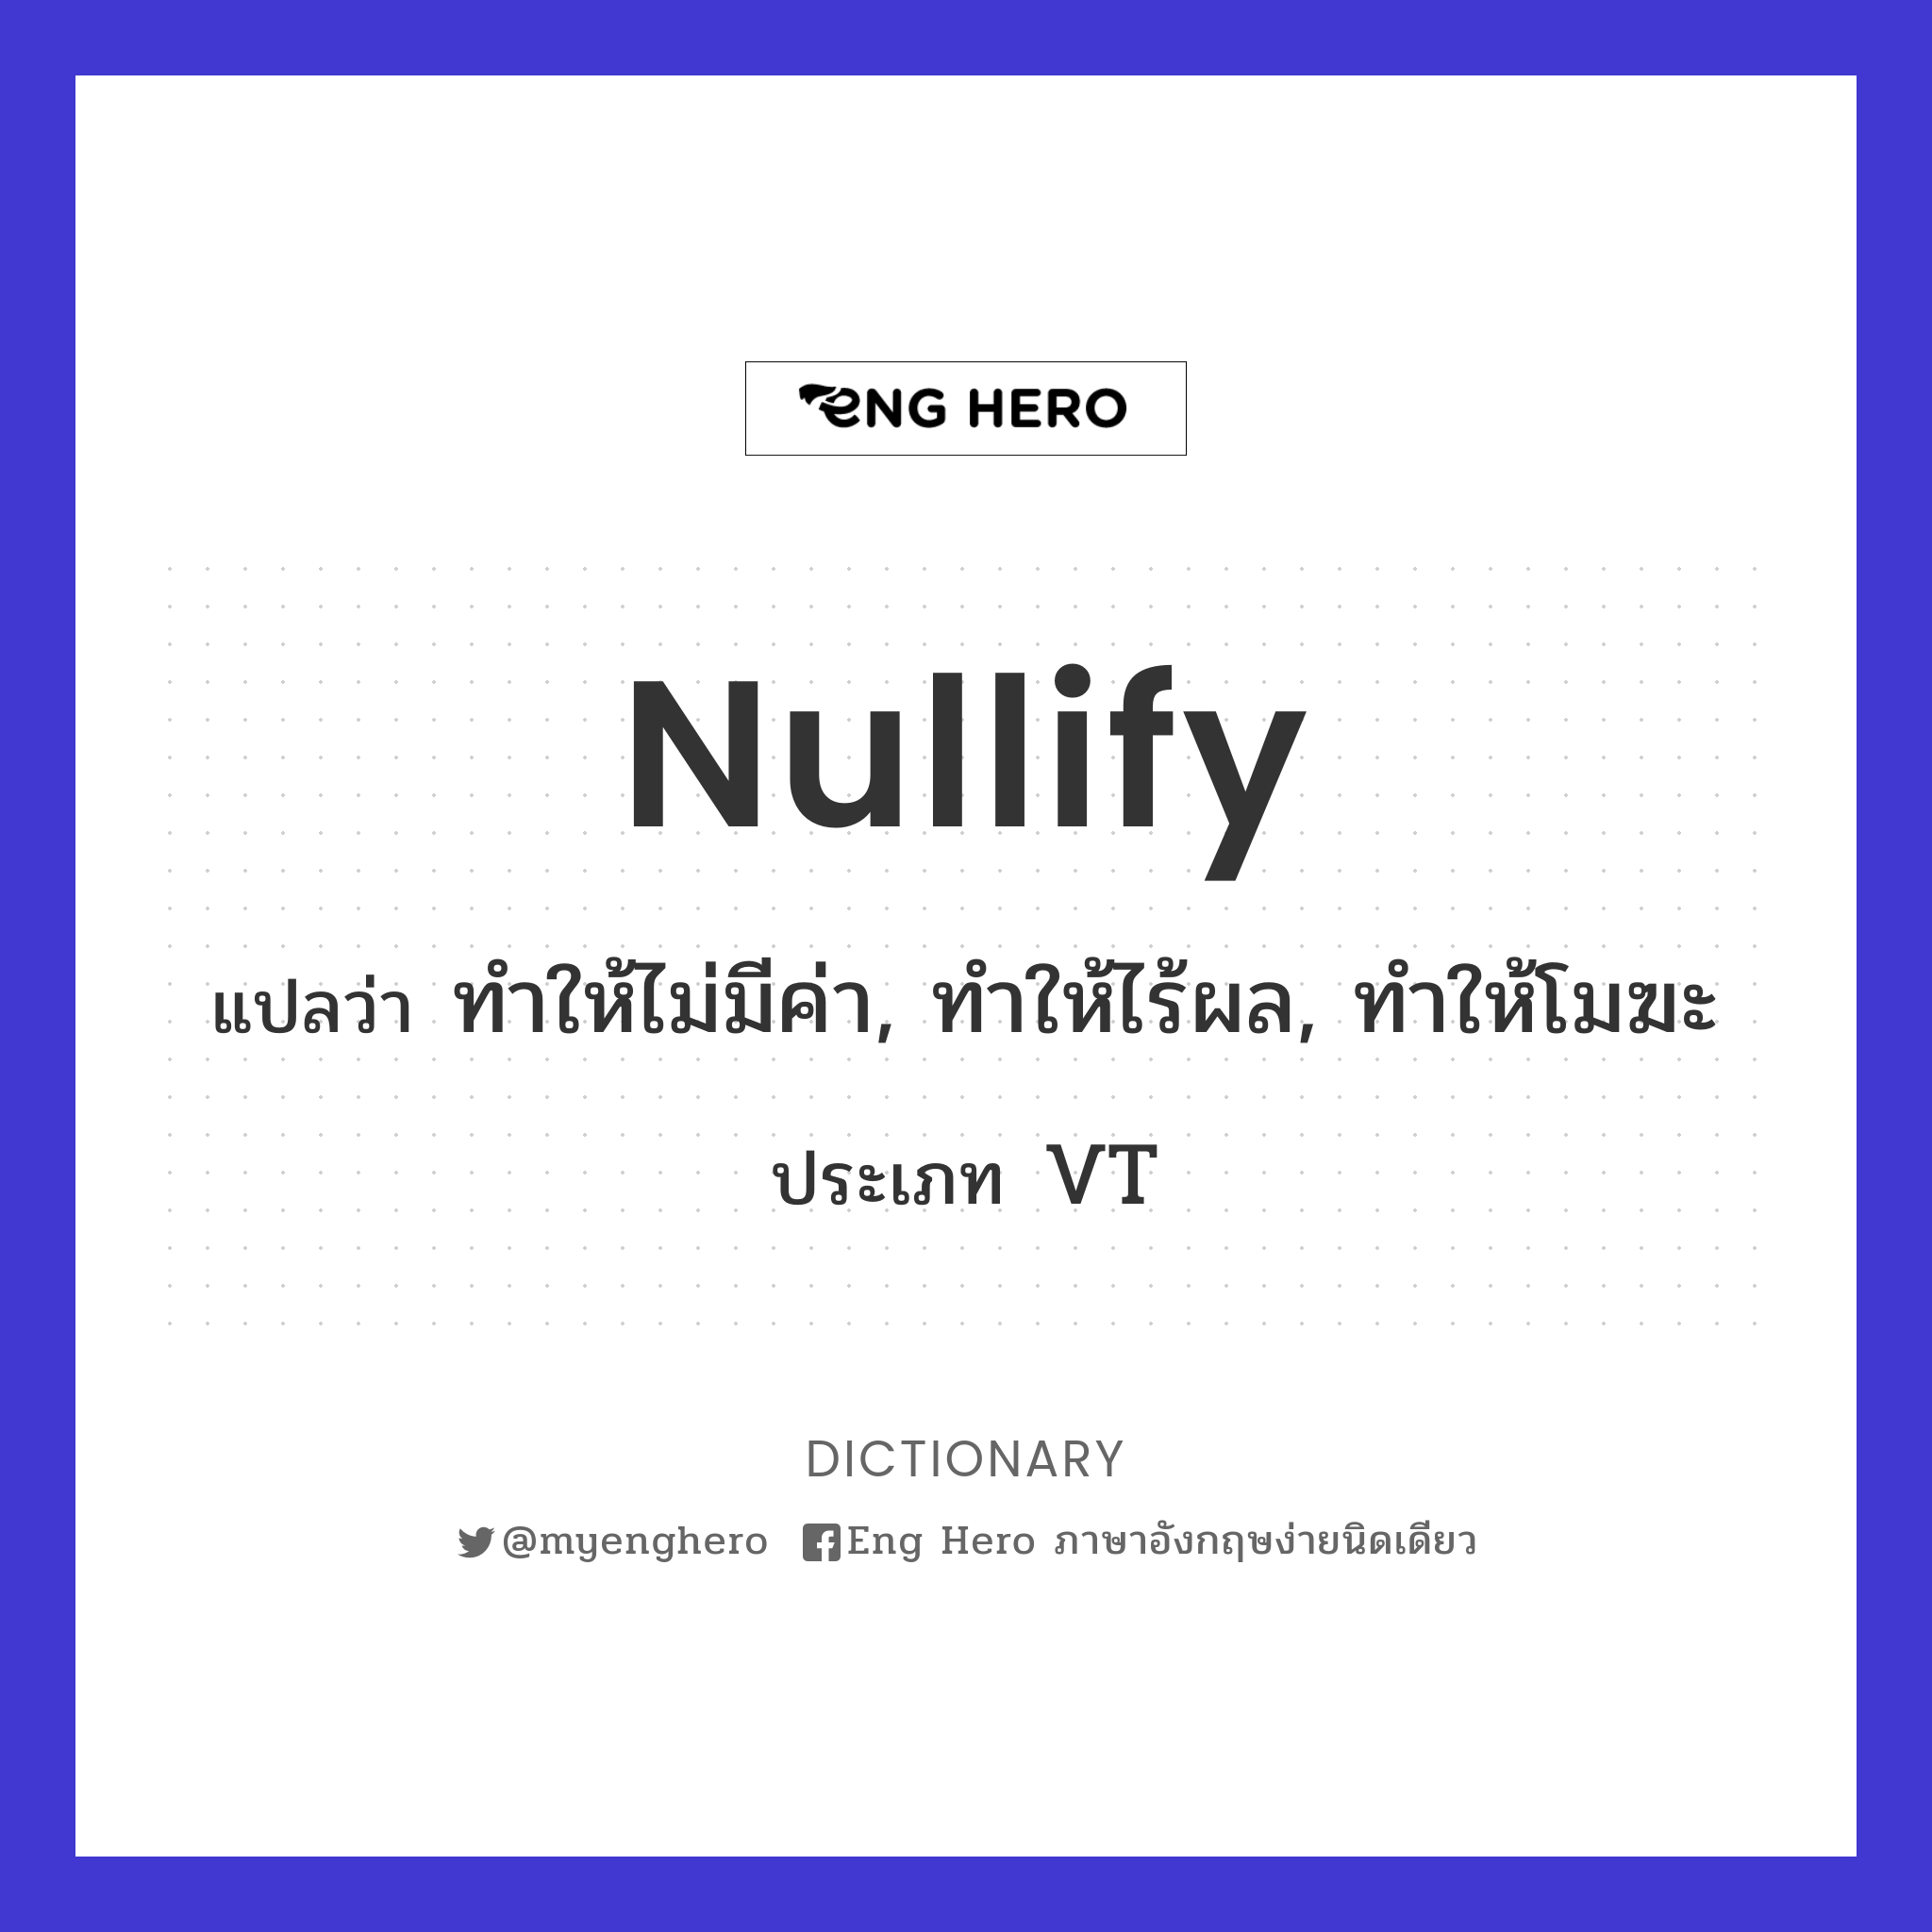 nullify